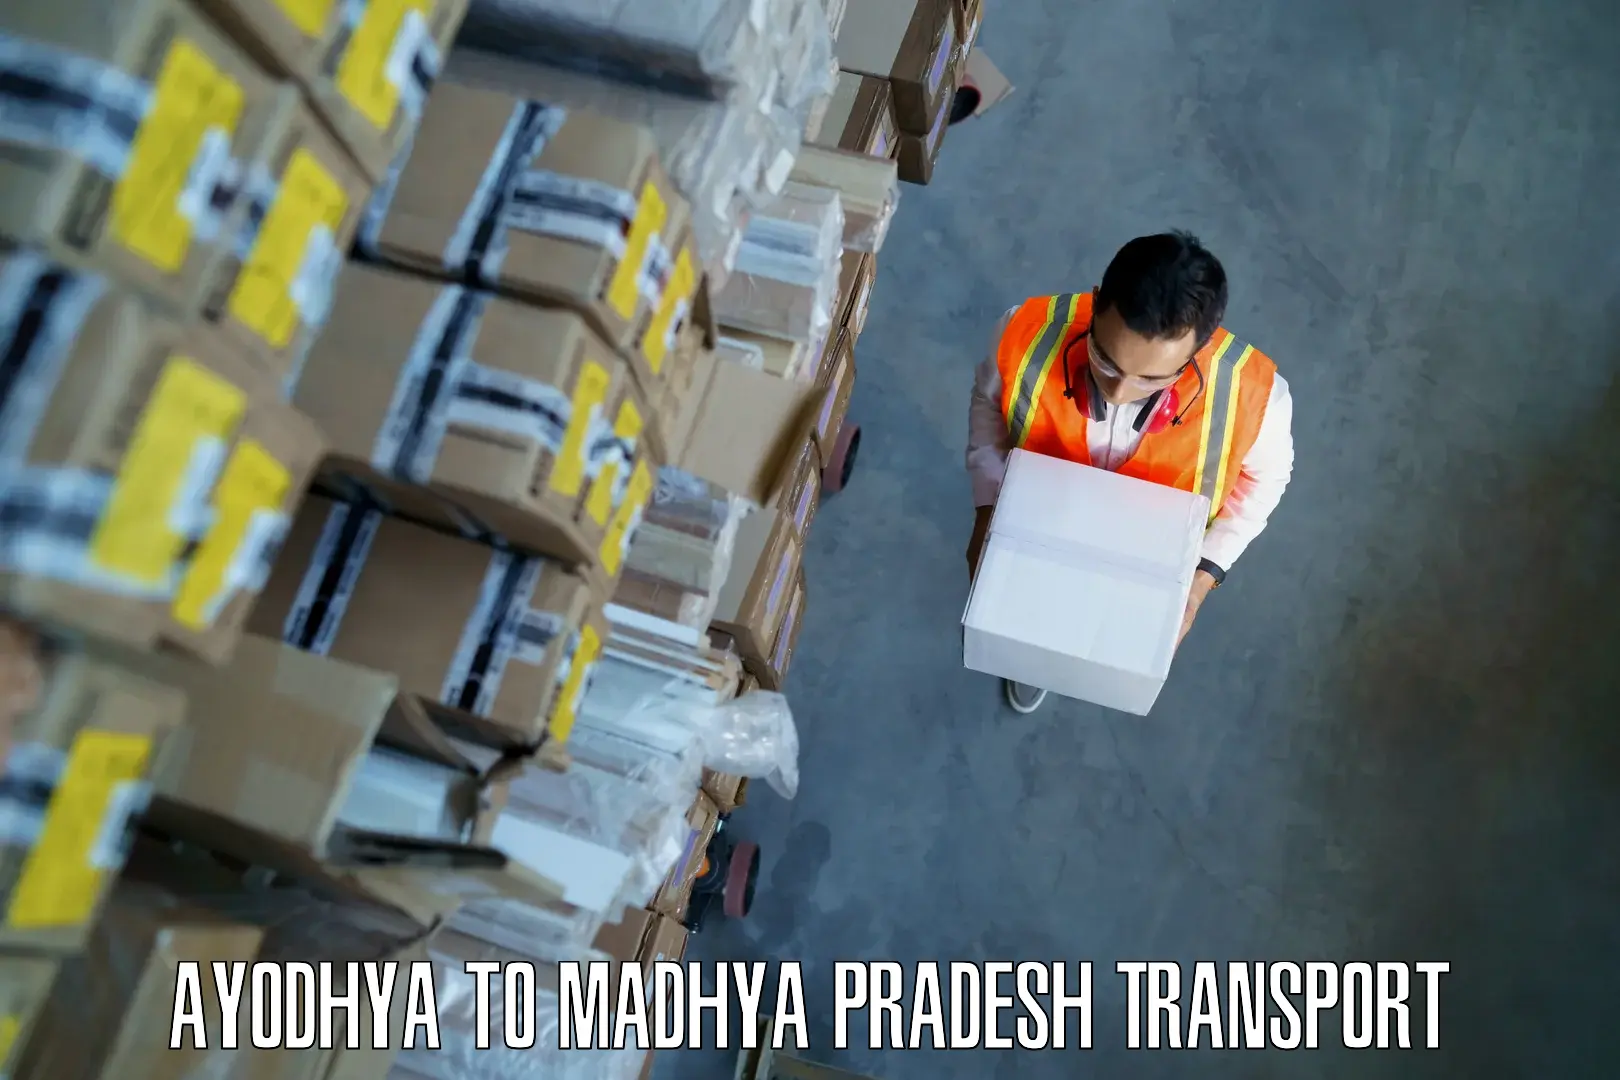 Nearest transport service Ayodhya to IIIT Bhopal